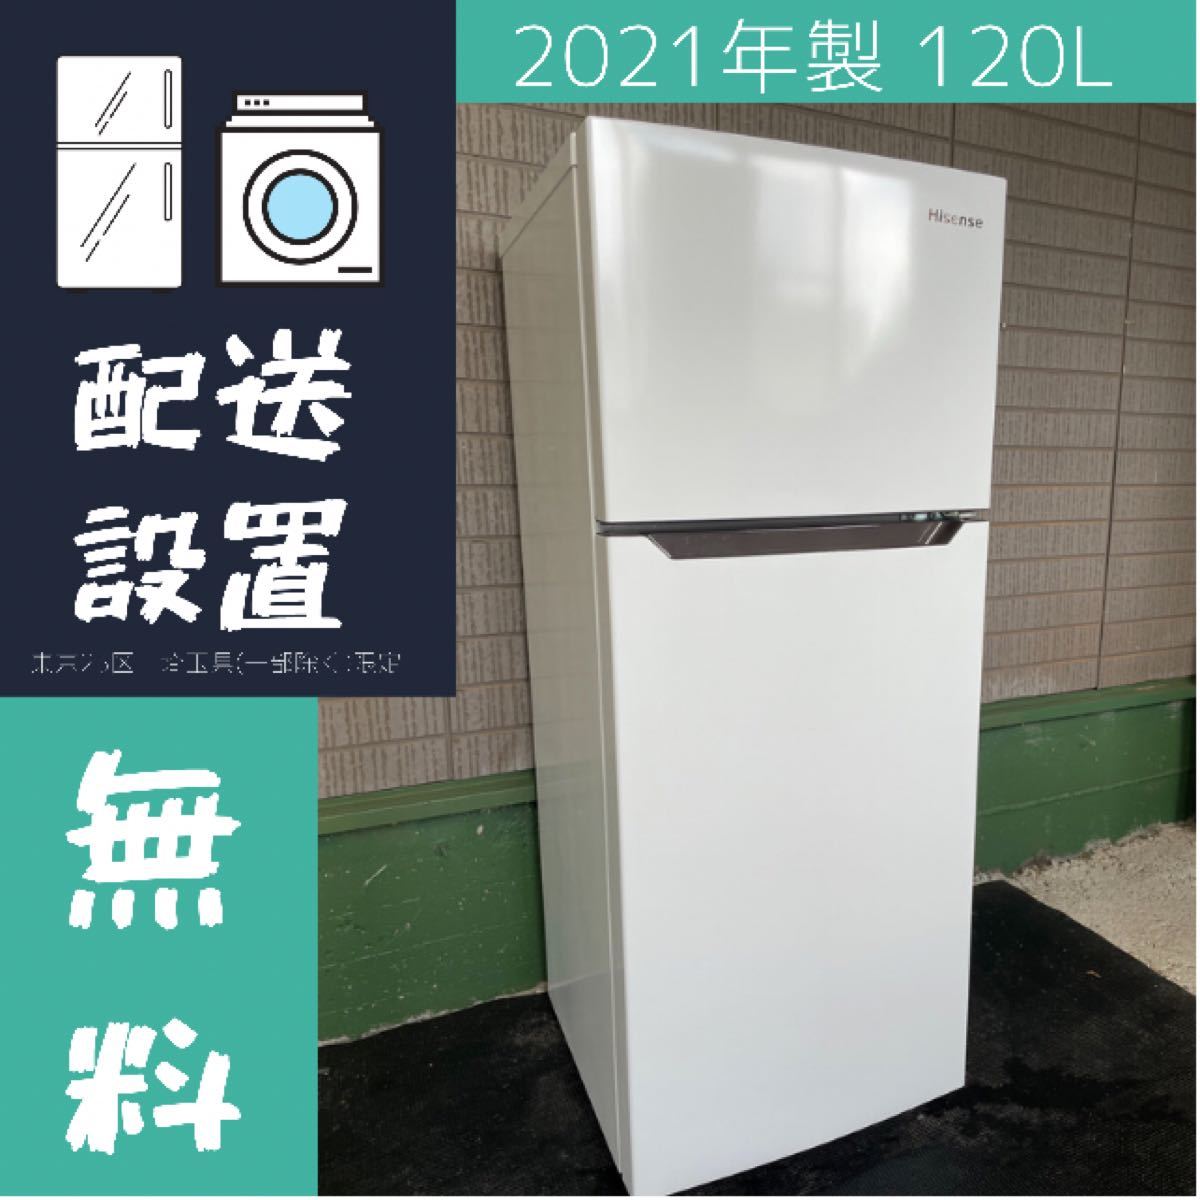 美品 2021年製 Hisense 120L 冷蔵庫【地域限定配送無料】